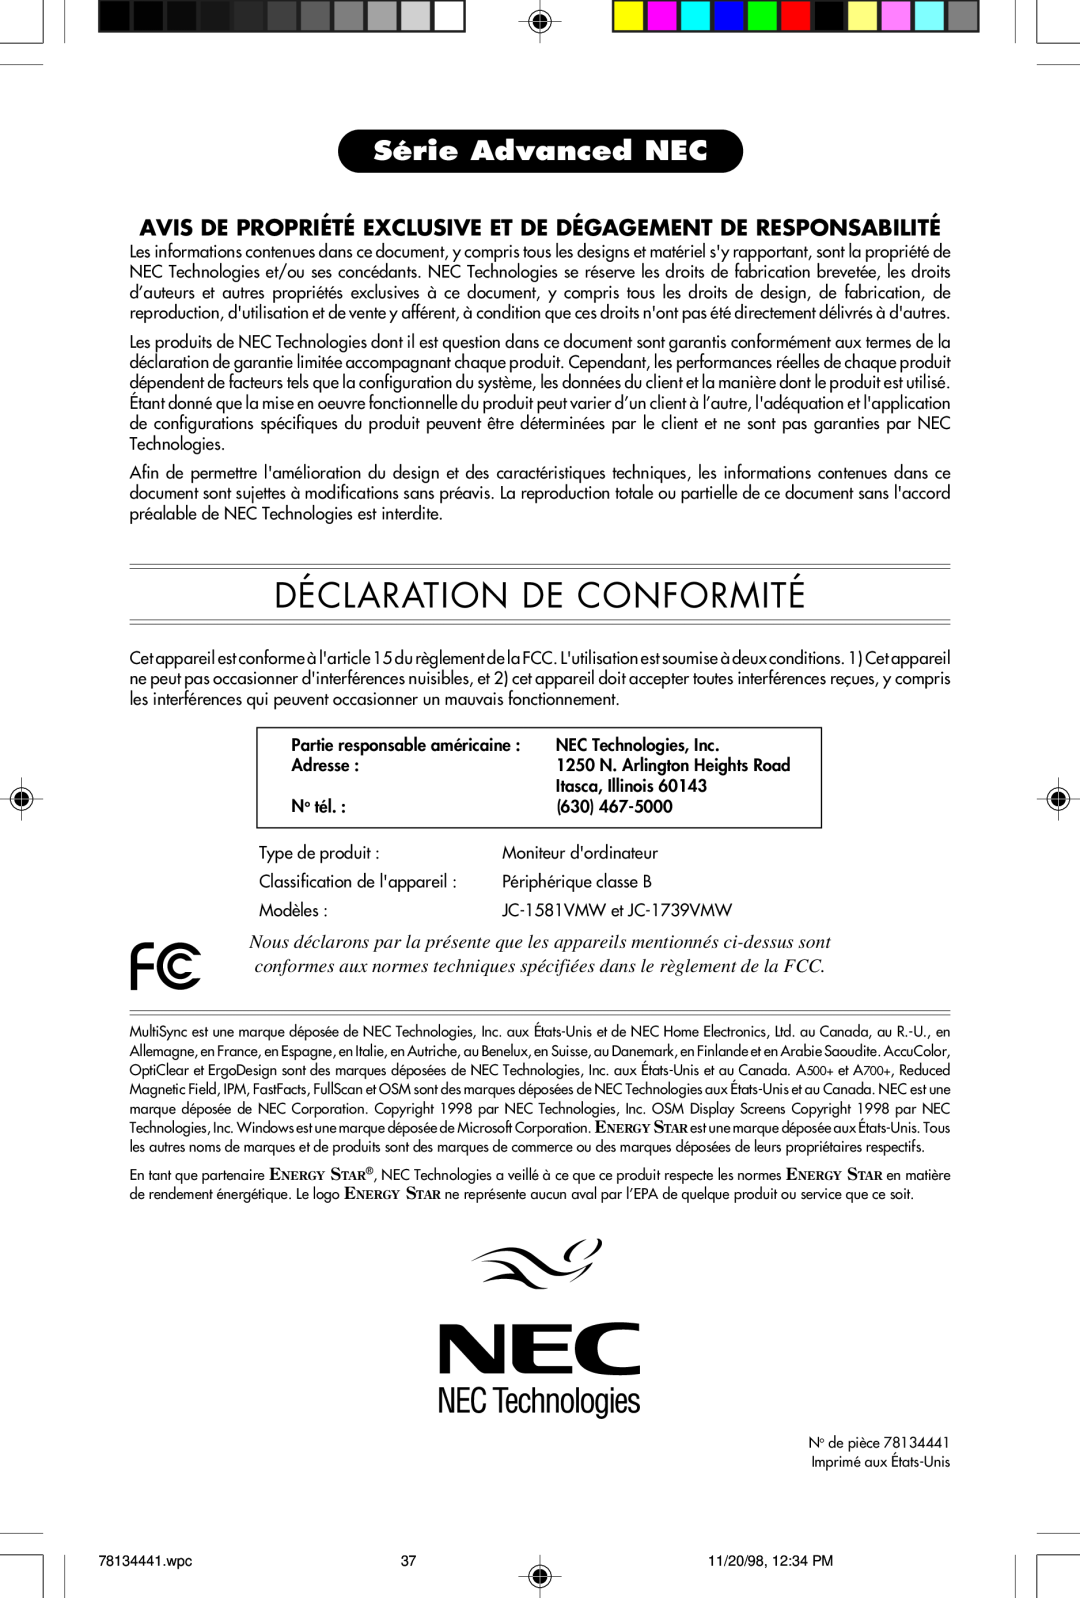 NEC A700+TM Déclaration De Conformité, Série Advanced NEC, Avis De Propriété Exclusive Et De Dégagement De Responsabilité 